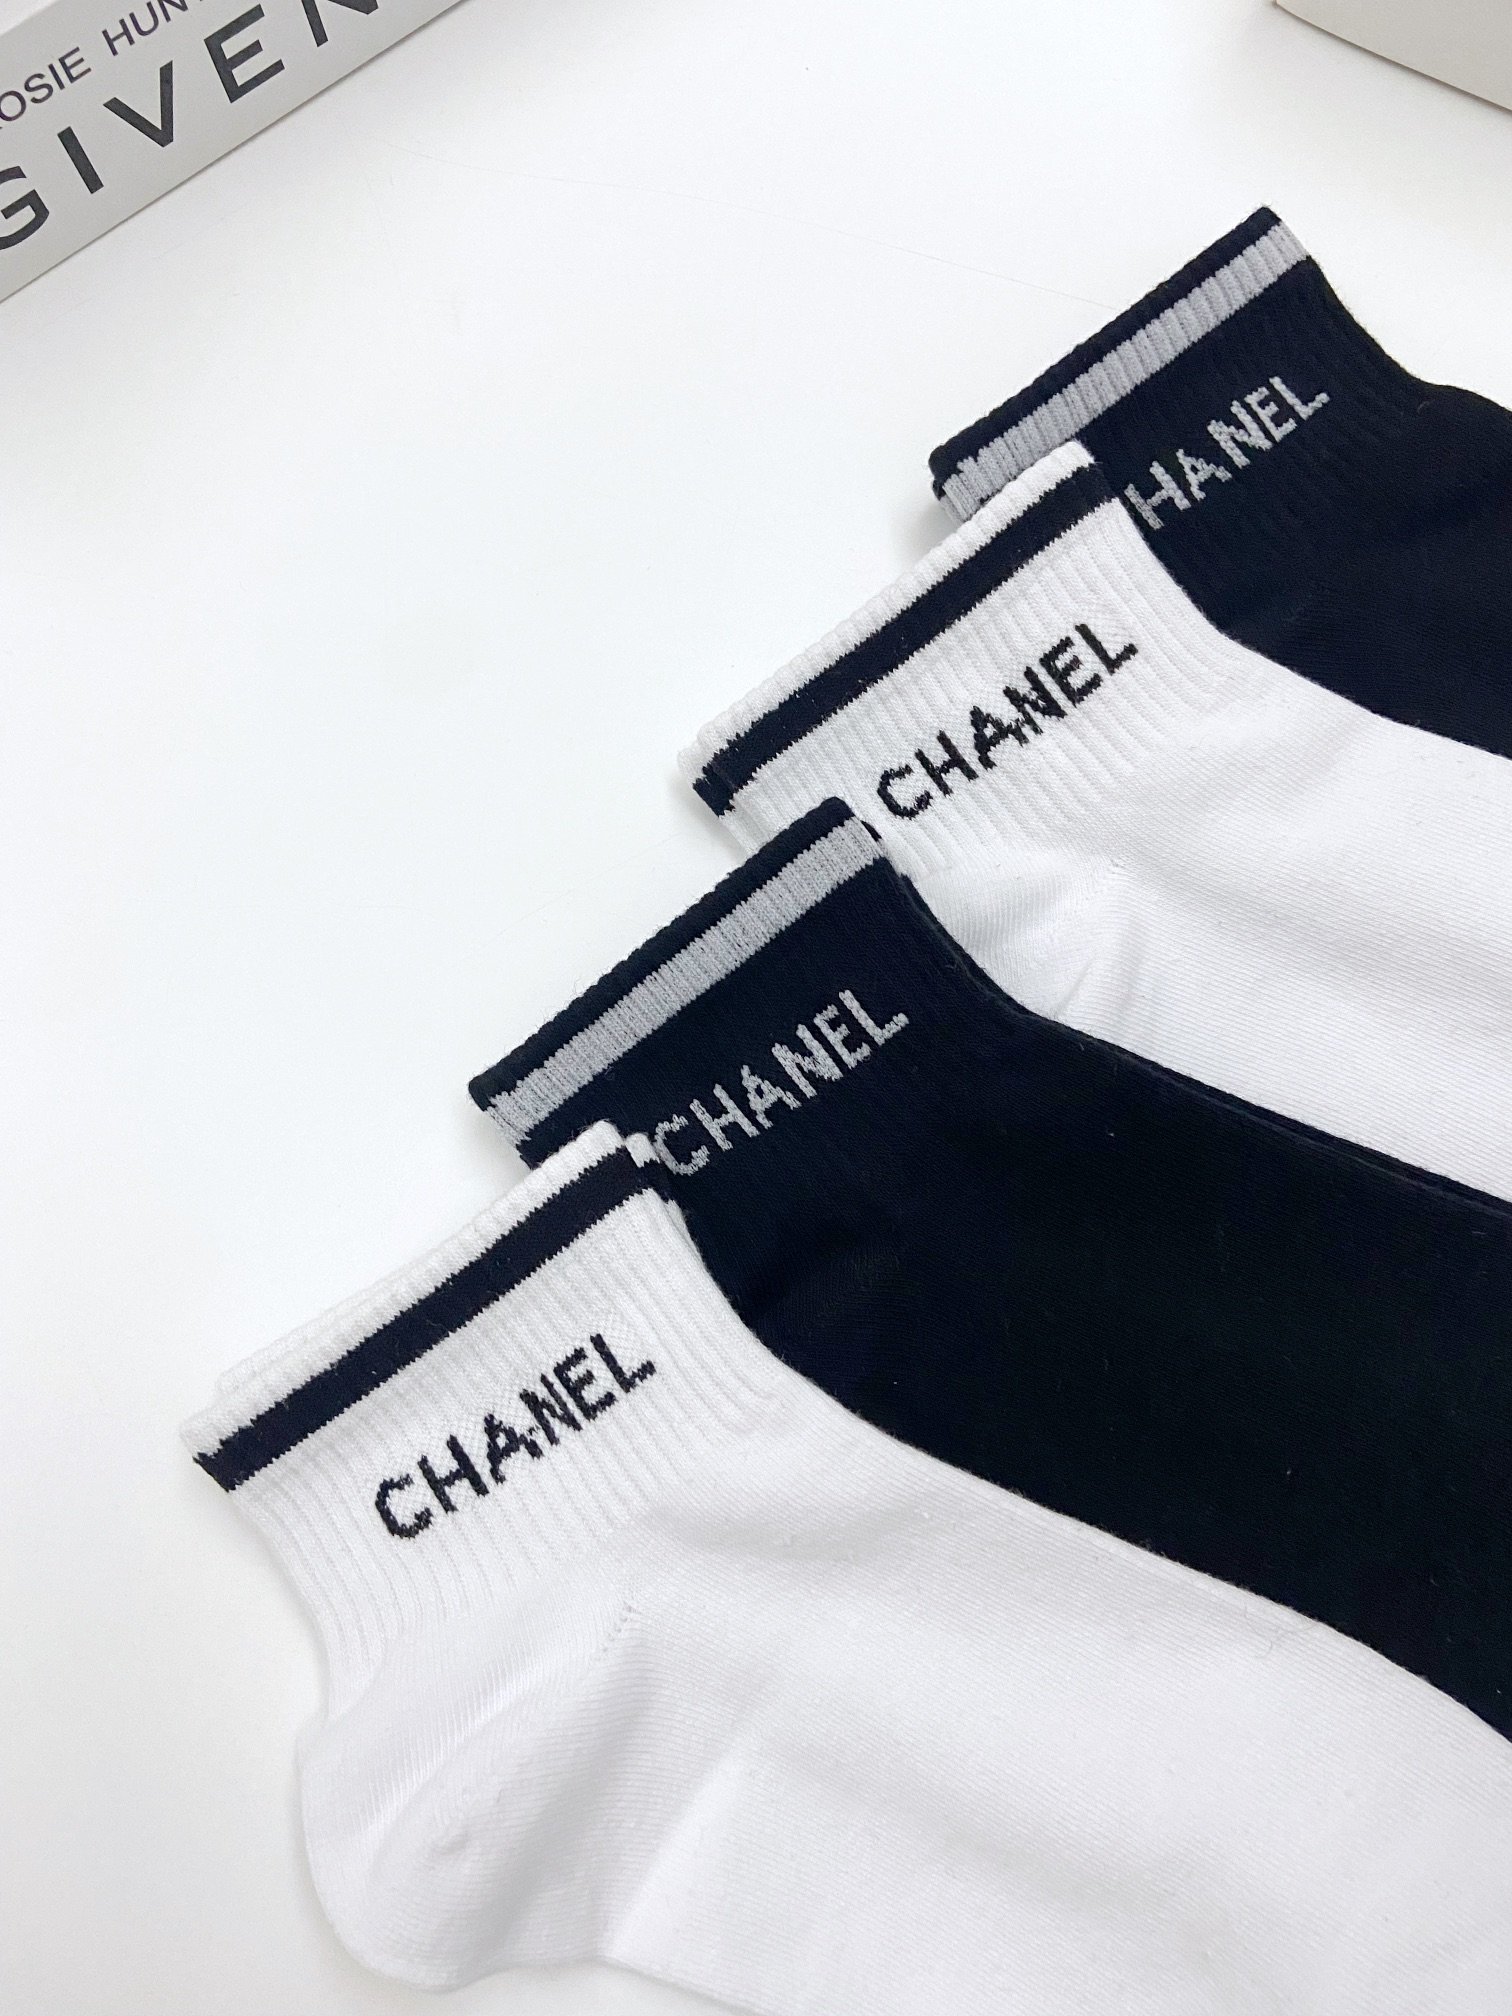 配包装一盒4双Chanel香奈儿经典字母logo纯棉短袜ins超火爆短袜纯棉面料潮人必备经典配色个性时尚